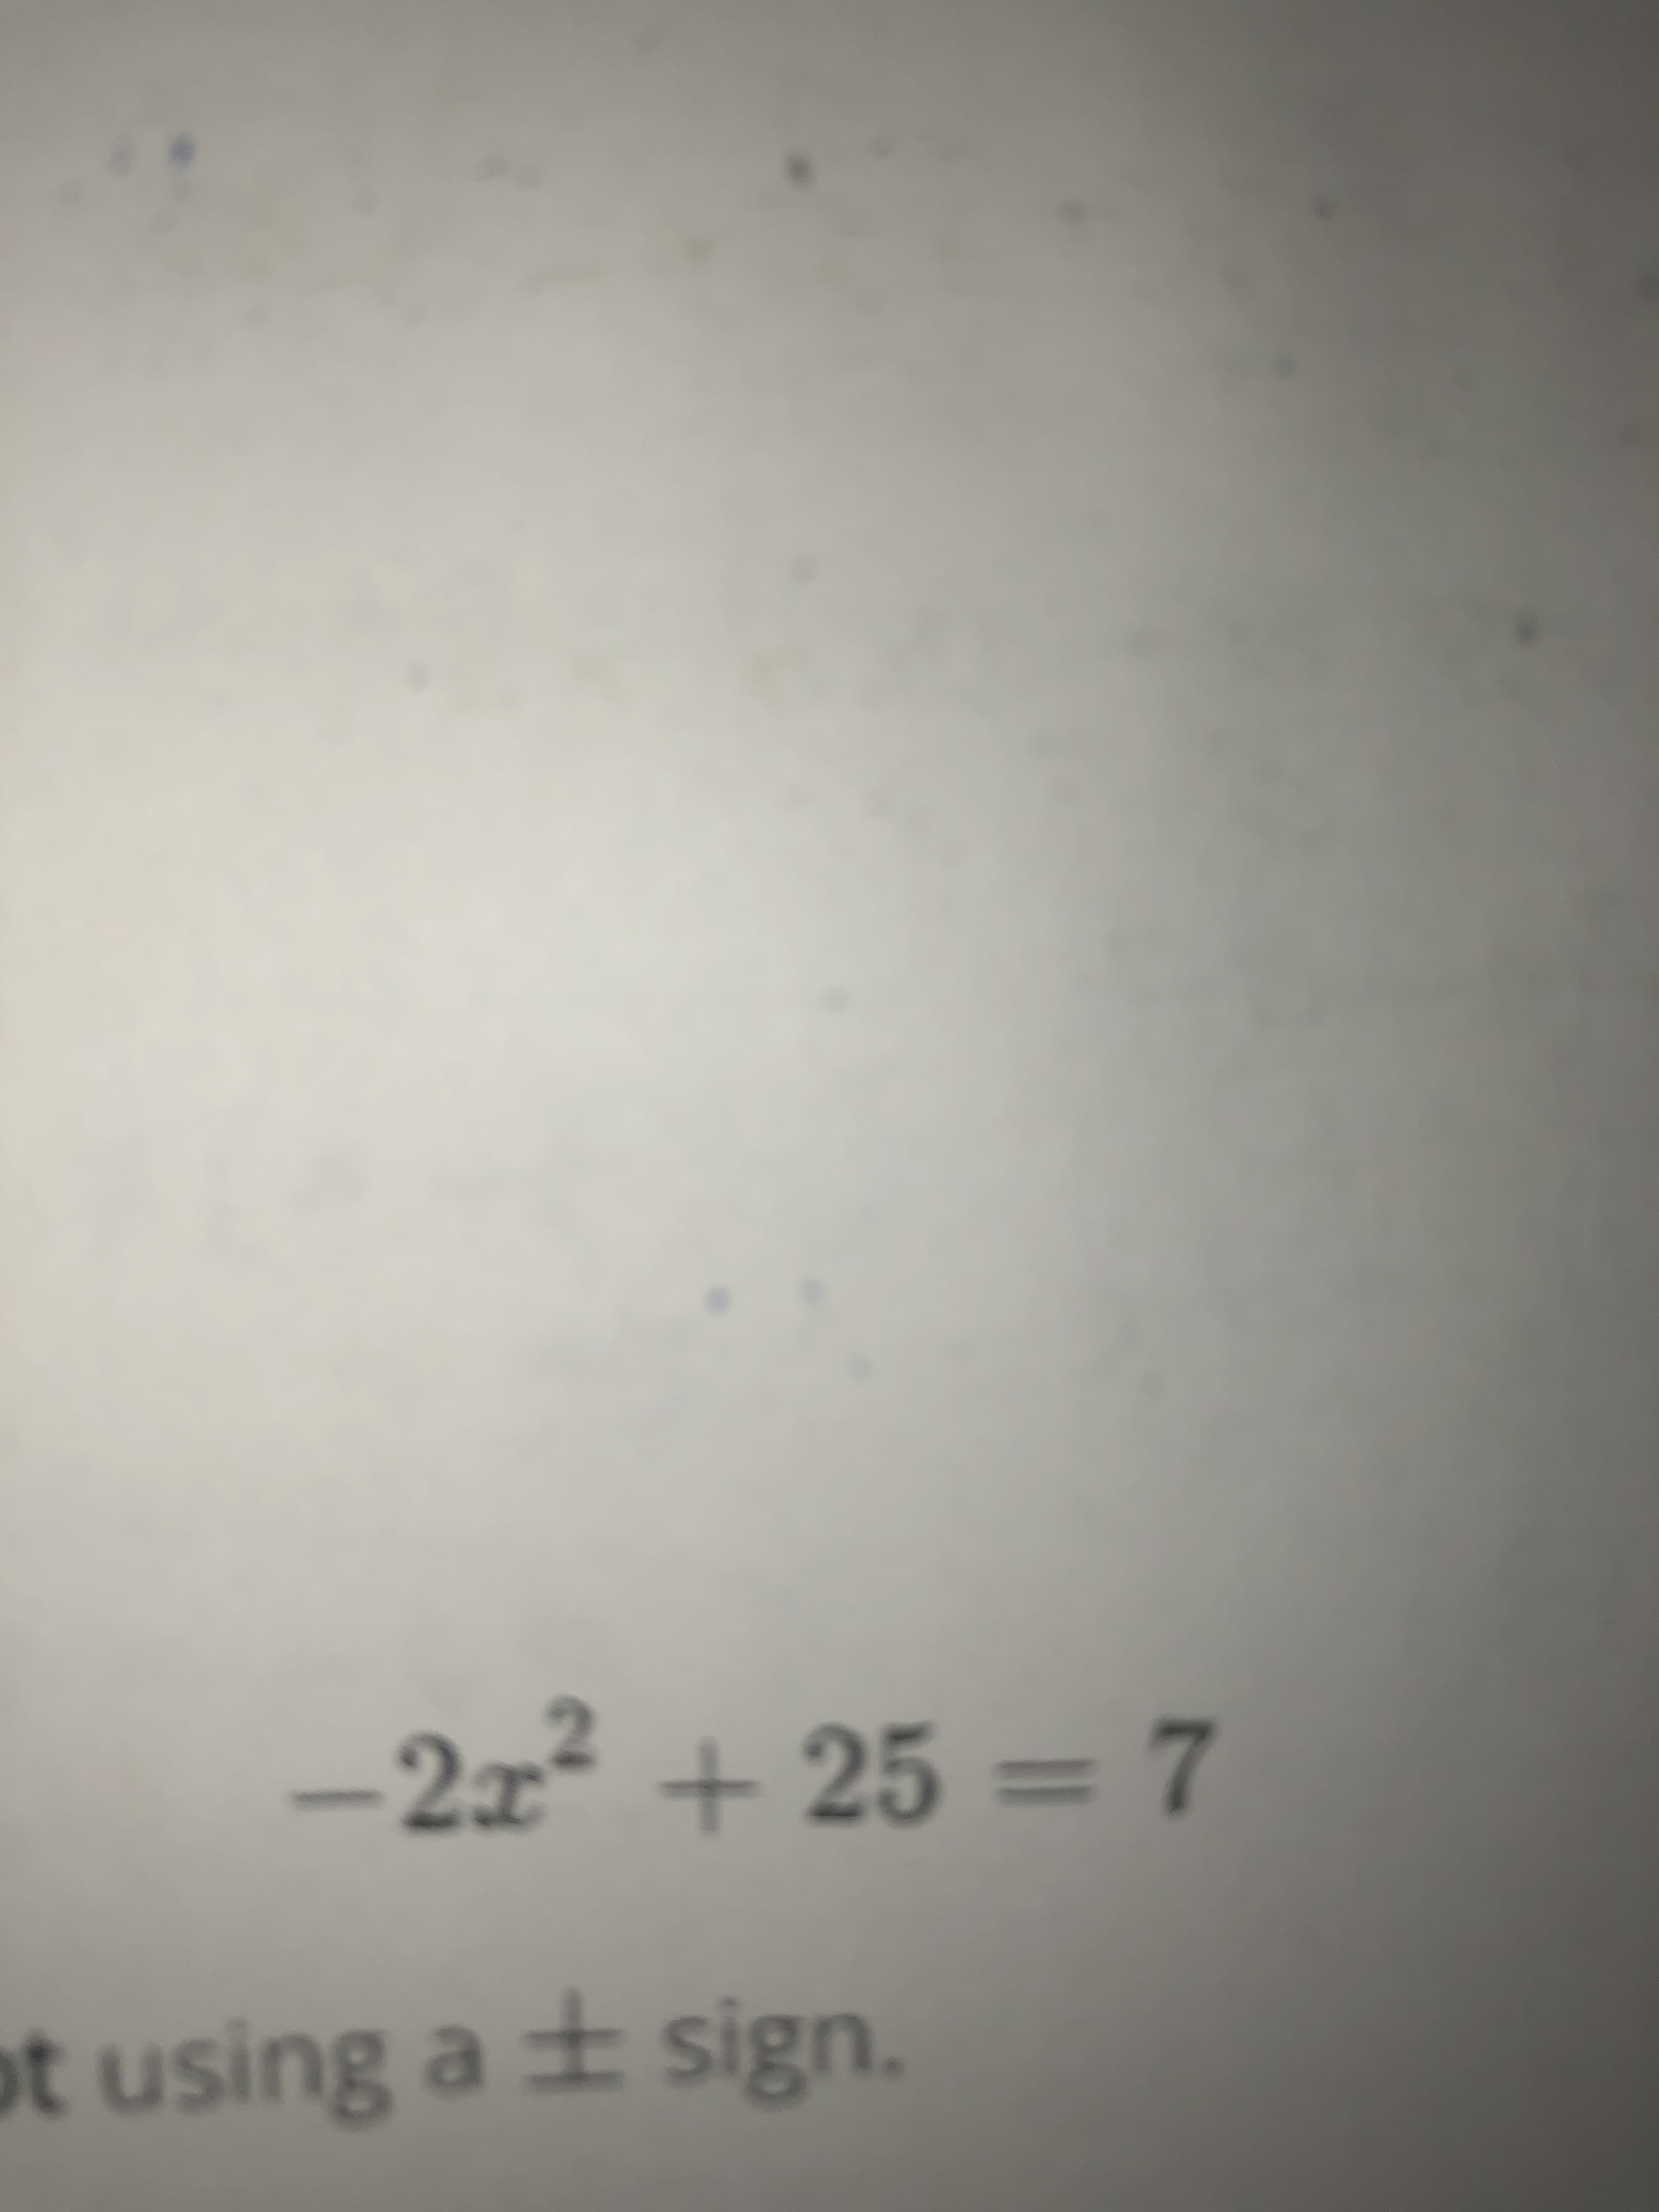 -2x² + 25 = 7
ot using a ± sign.
